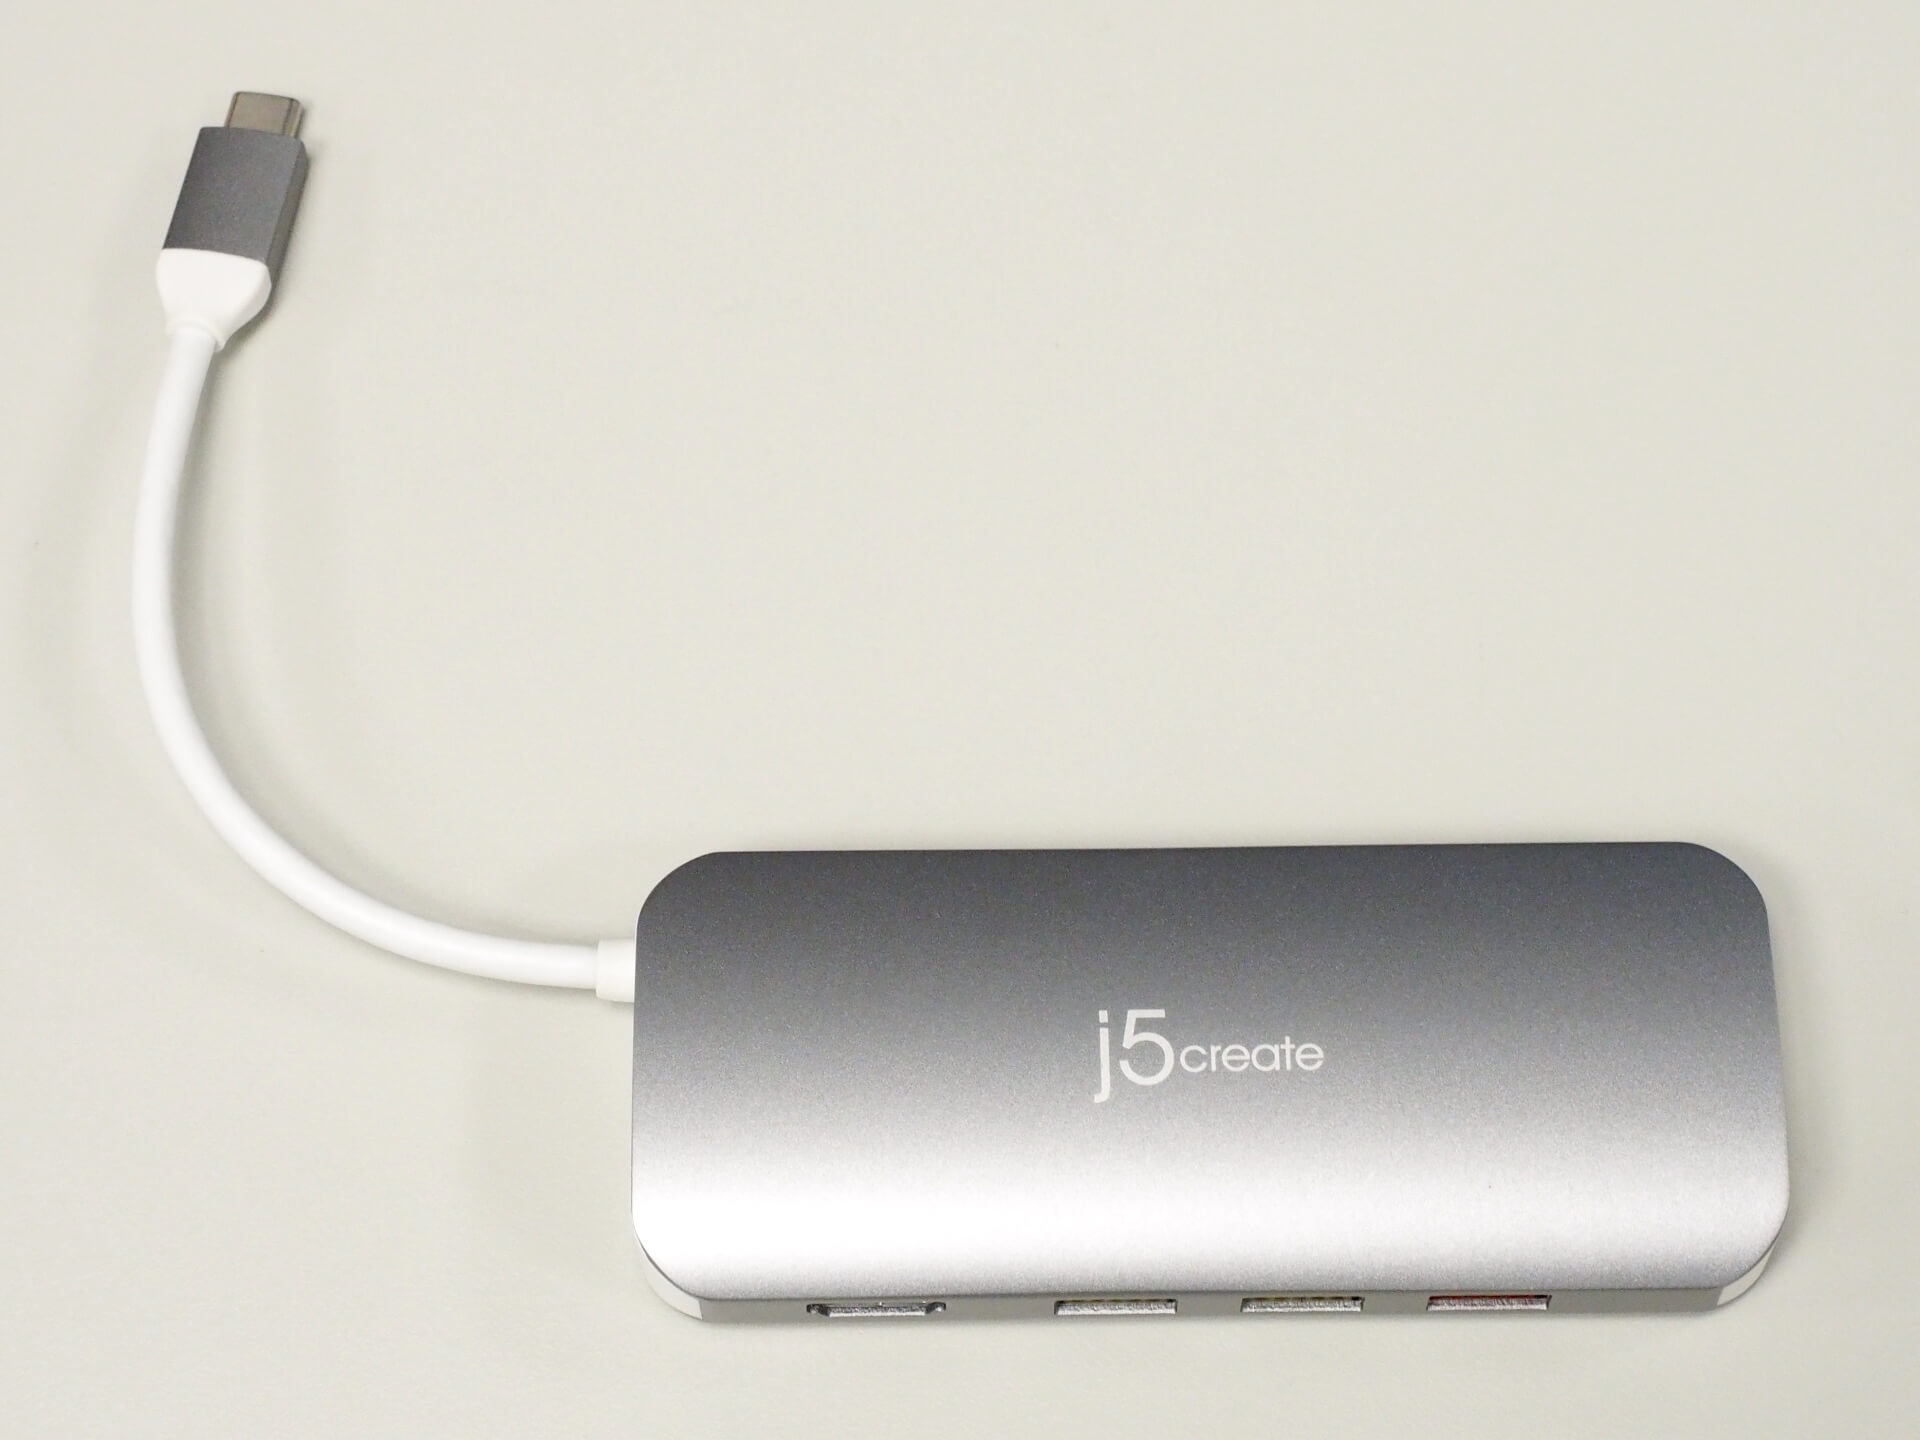 [開箱] j5create USB Type-C 10 合 1 擴充基座 JCD384 - G. T. Wang